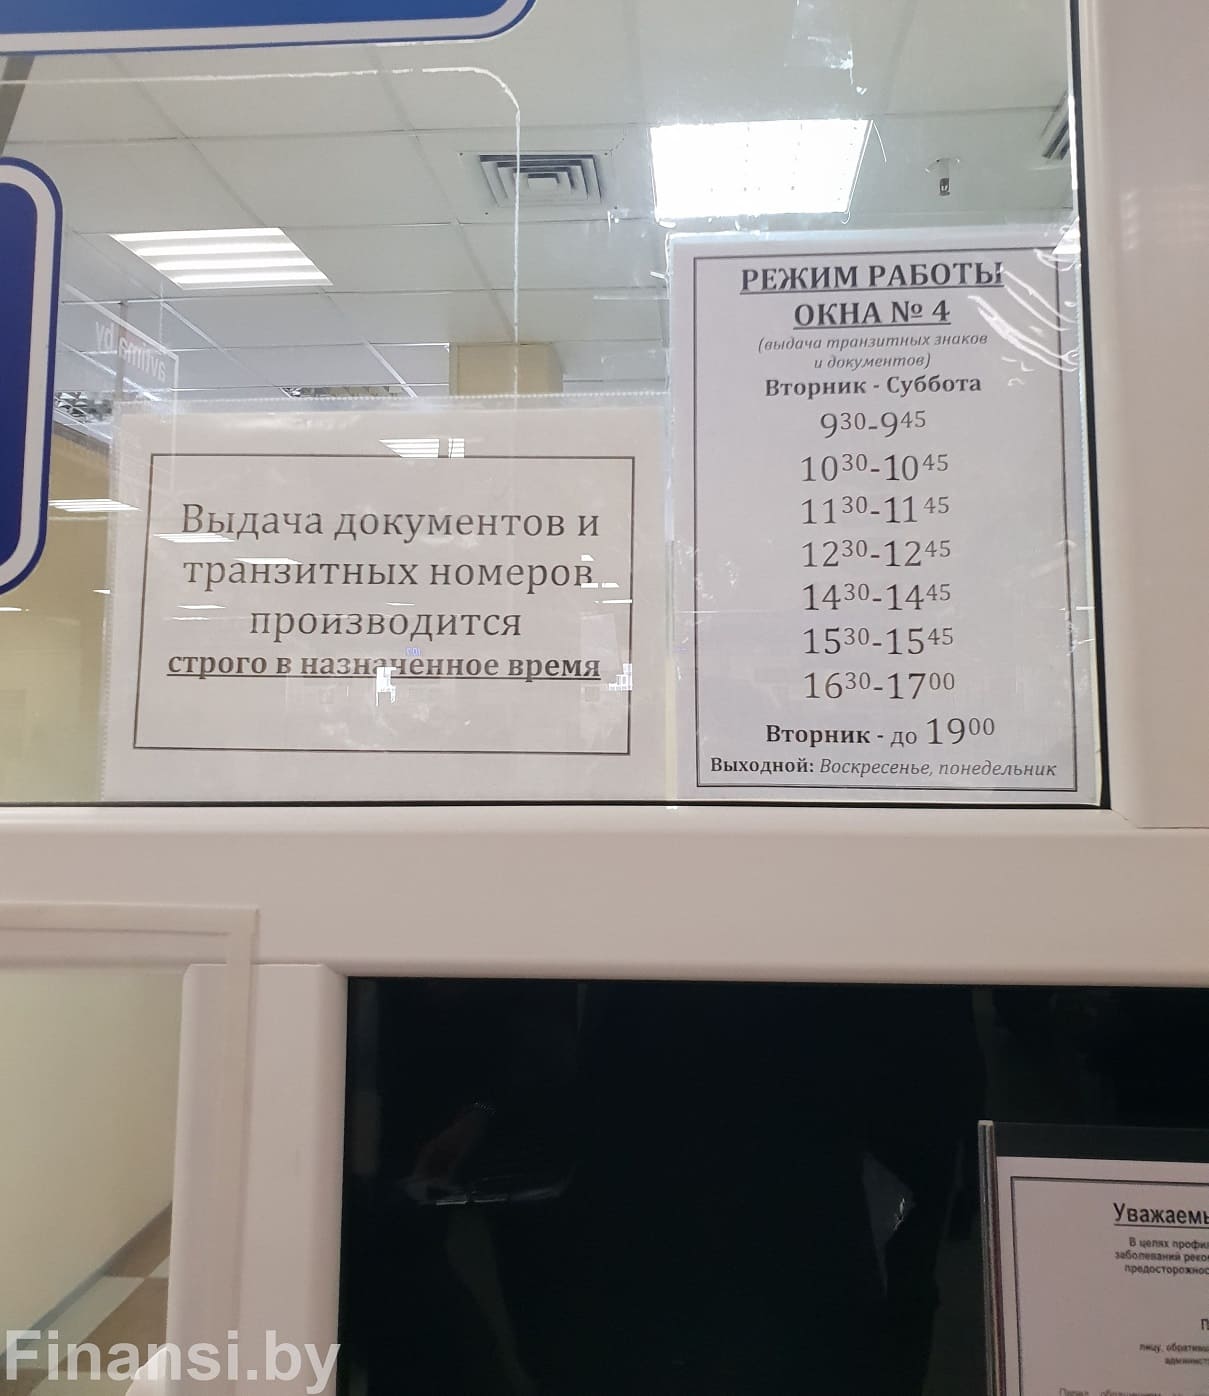 Расписание окна на выдачу документов и транзитных номеров МРО ГАИ Ждановичи